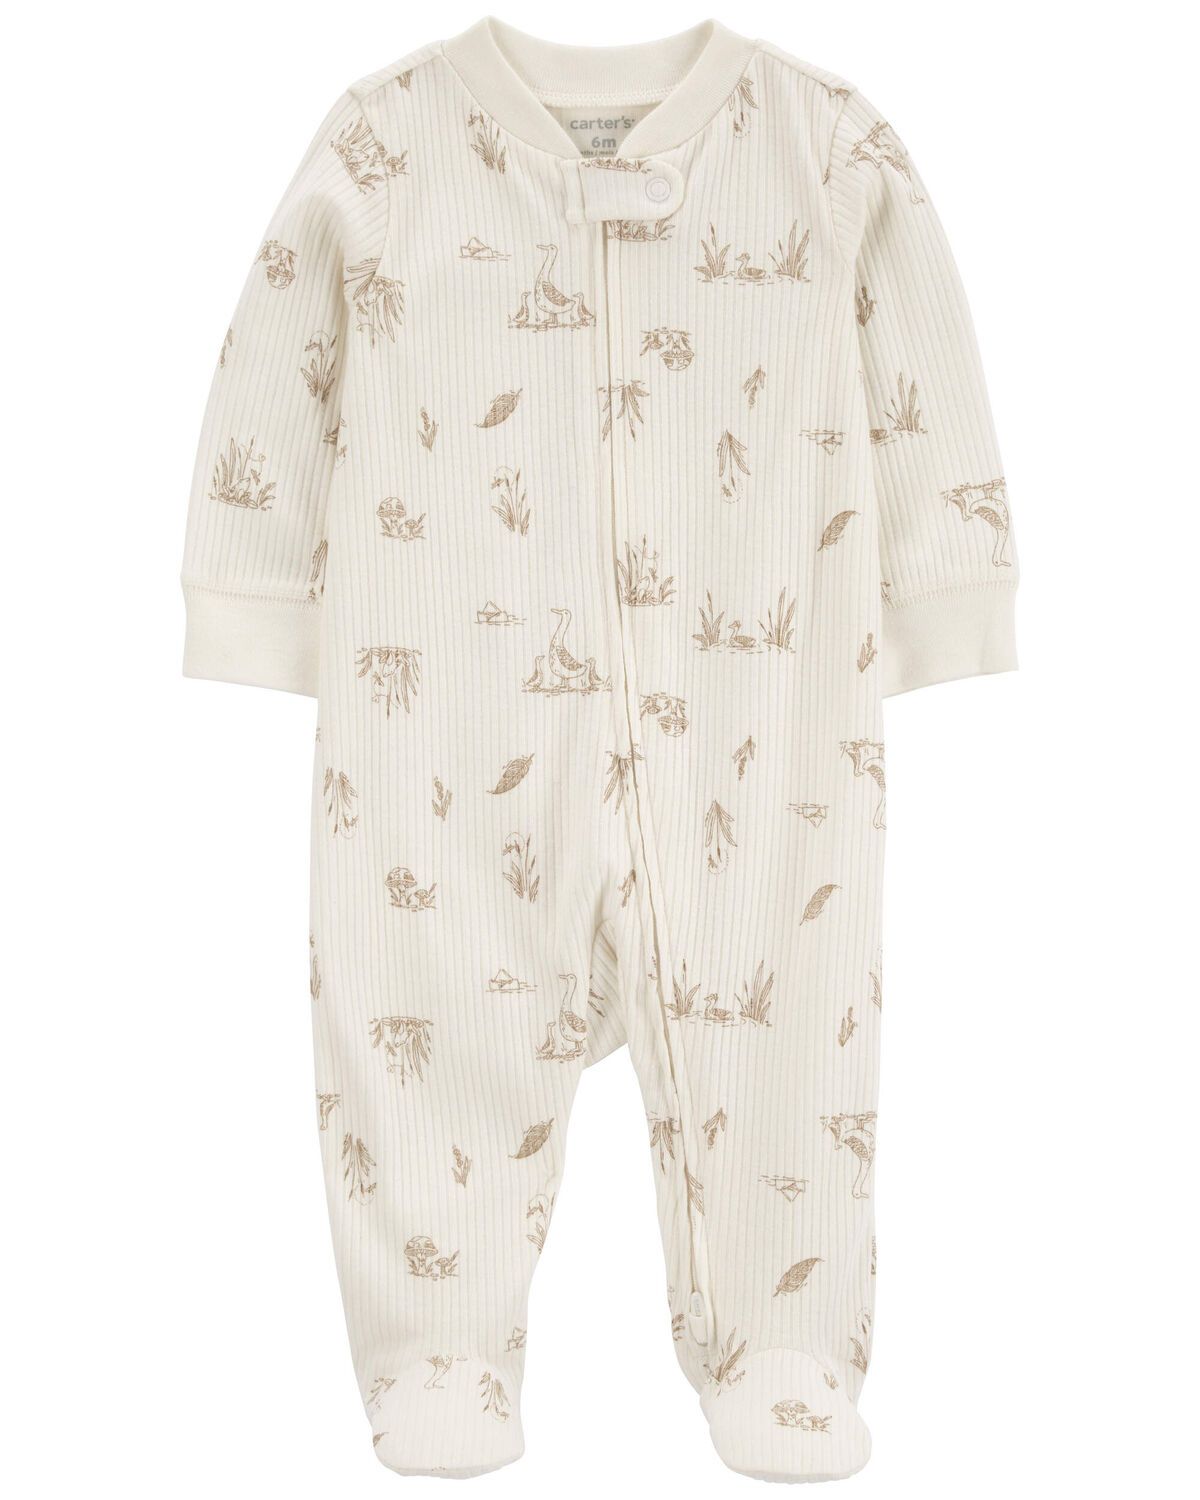 Baby Goose 2-Way Zip Thermal Sleep & Play Pajamas | Carter's